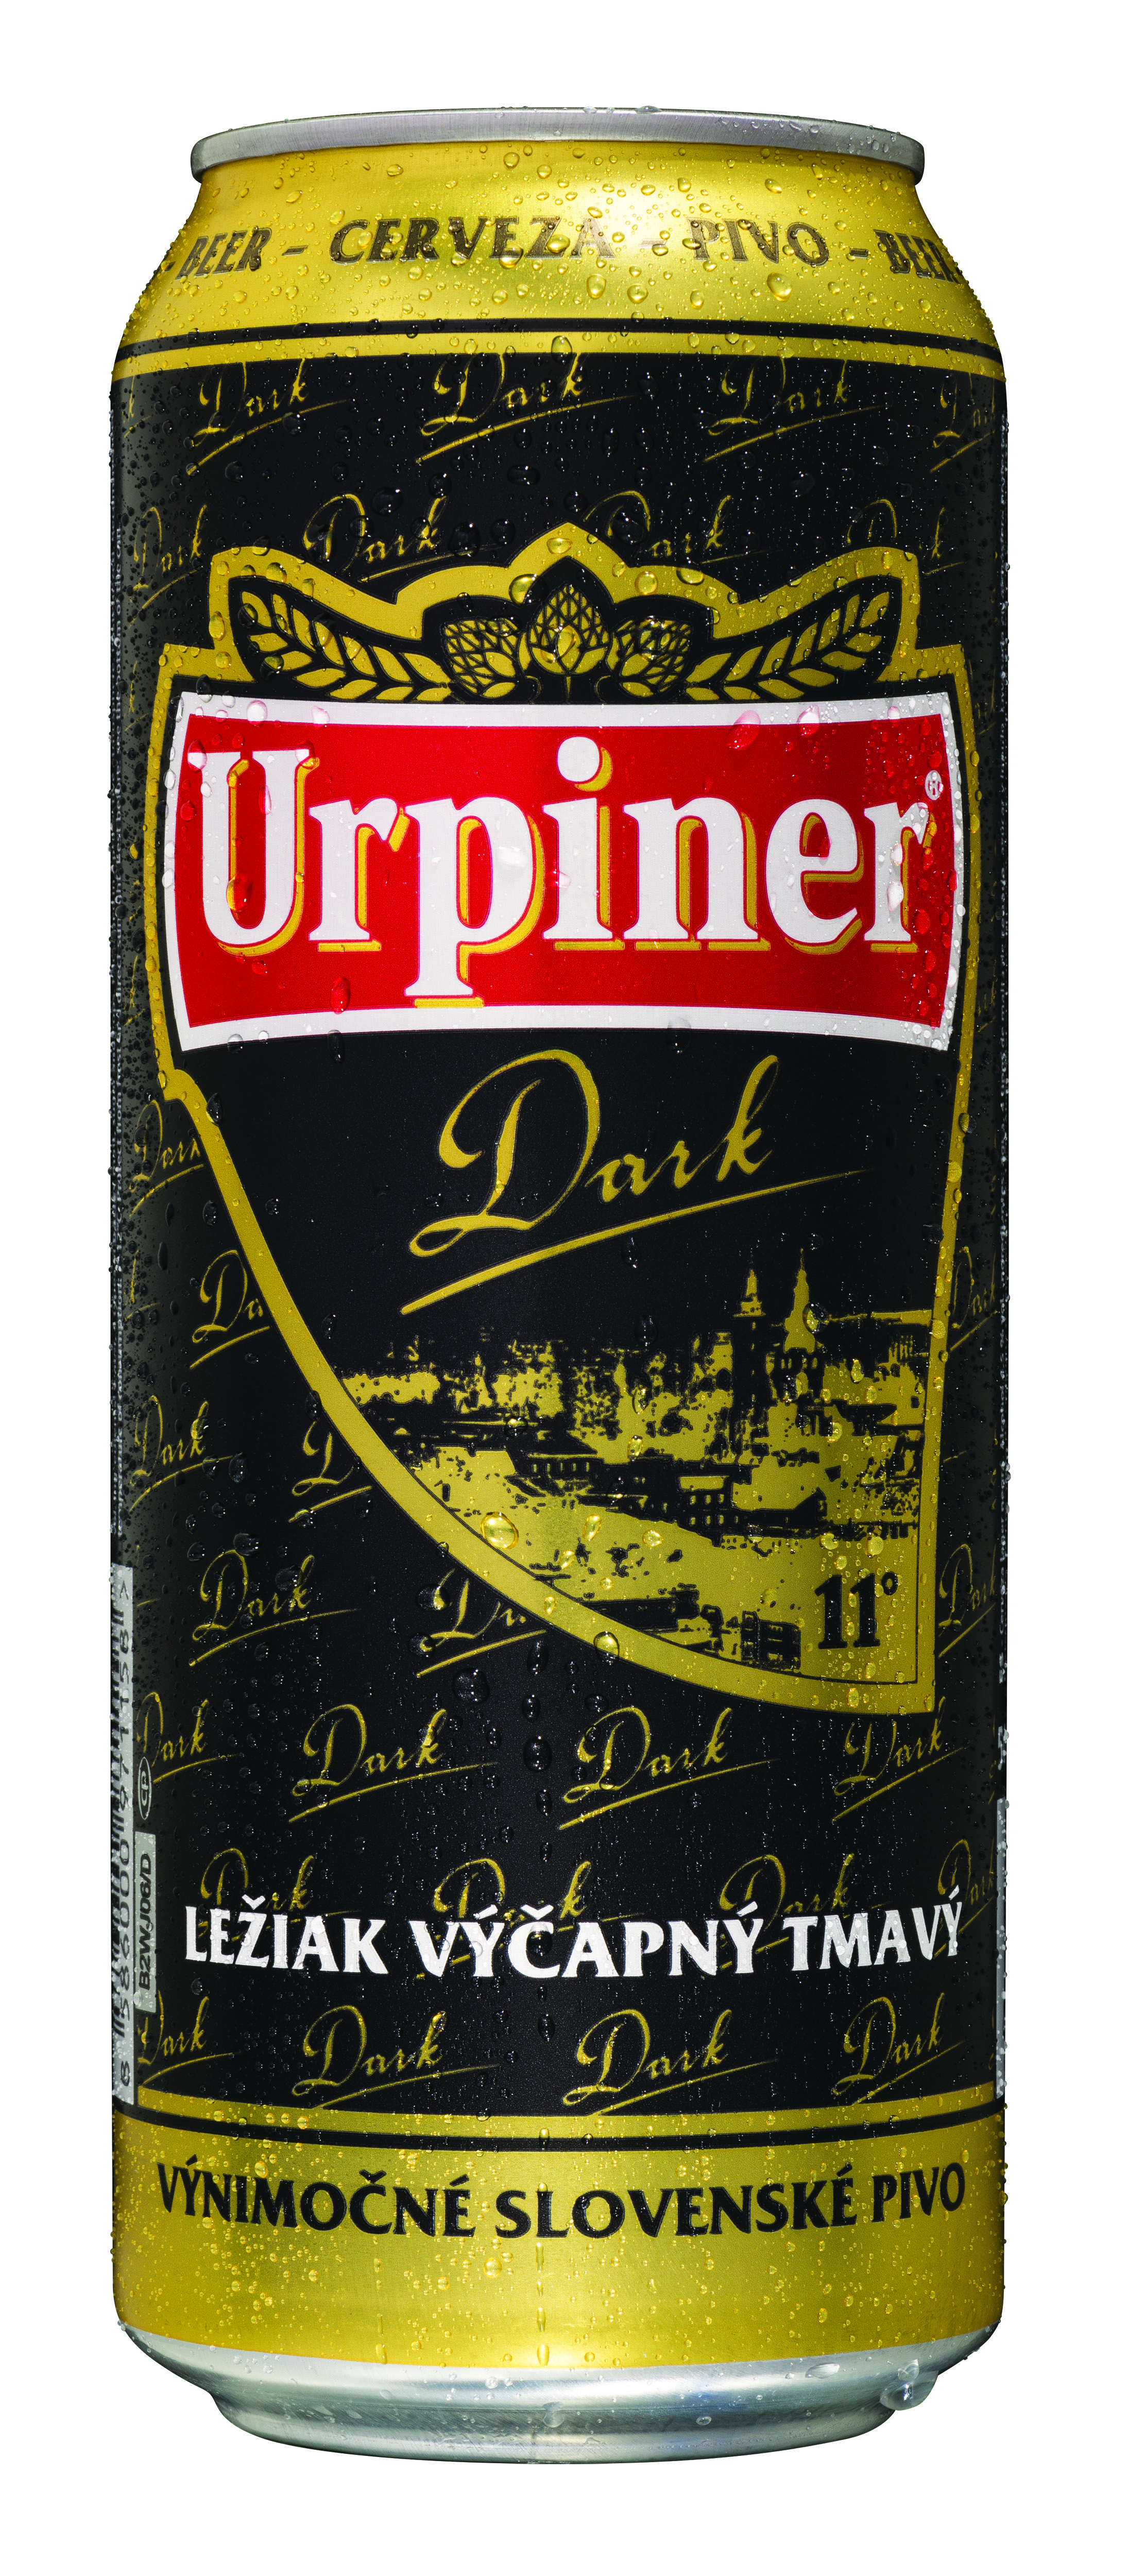 Urpiner Dark 11° draught lager